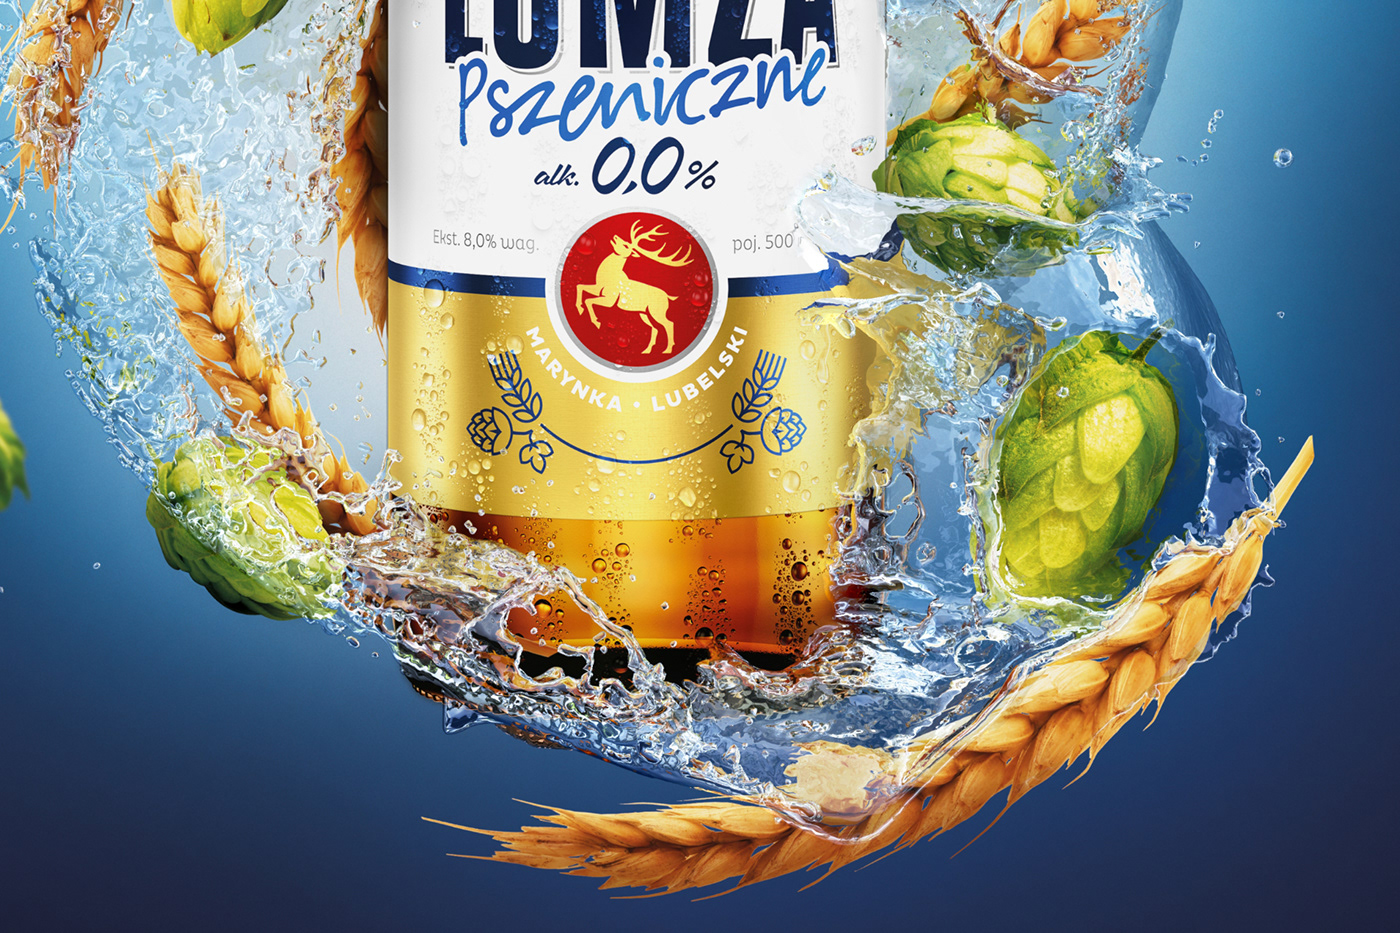 Vizualization bottle beer 3D Render beer label 3dsmax wizualizacja piwa łomża piwo piwo